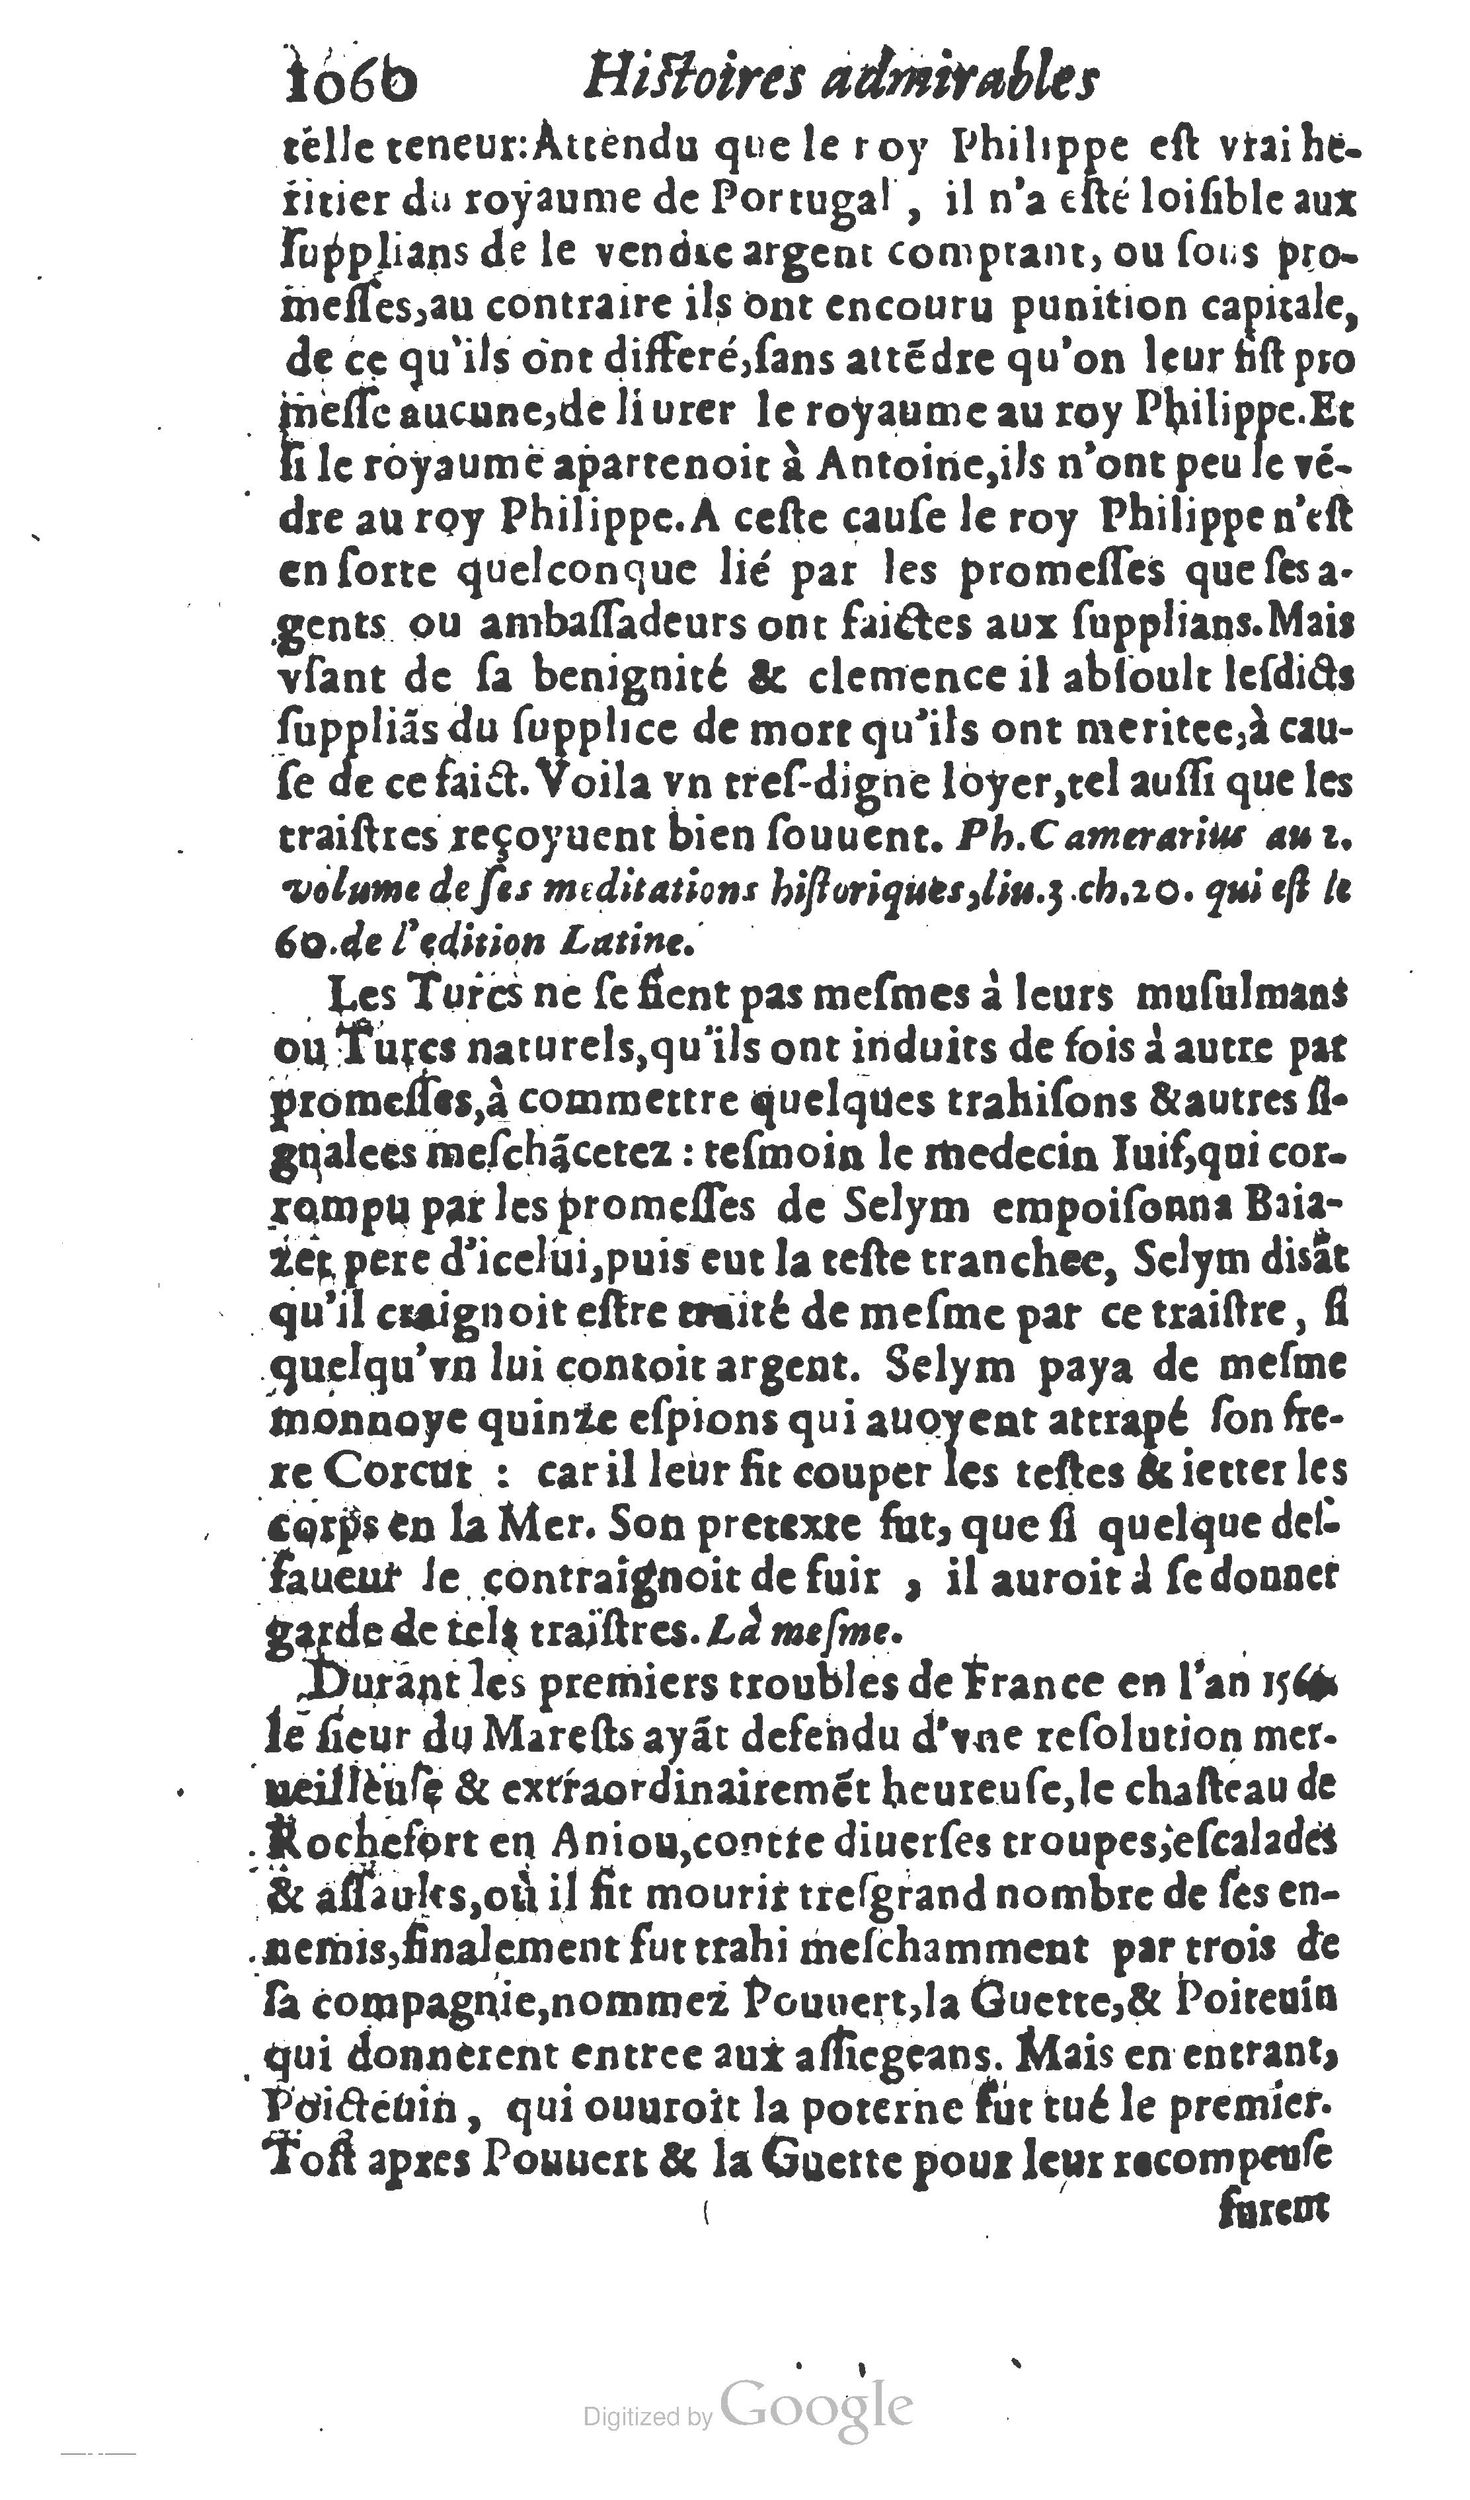 1610 Trésor d’histoires admirables et mémorables de nostre temps Marceau Princeton_Page_1081.jpg